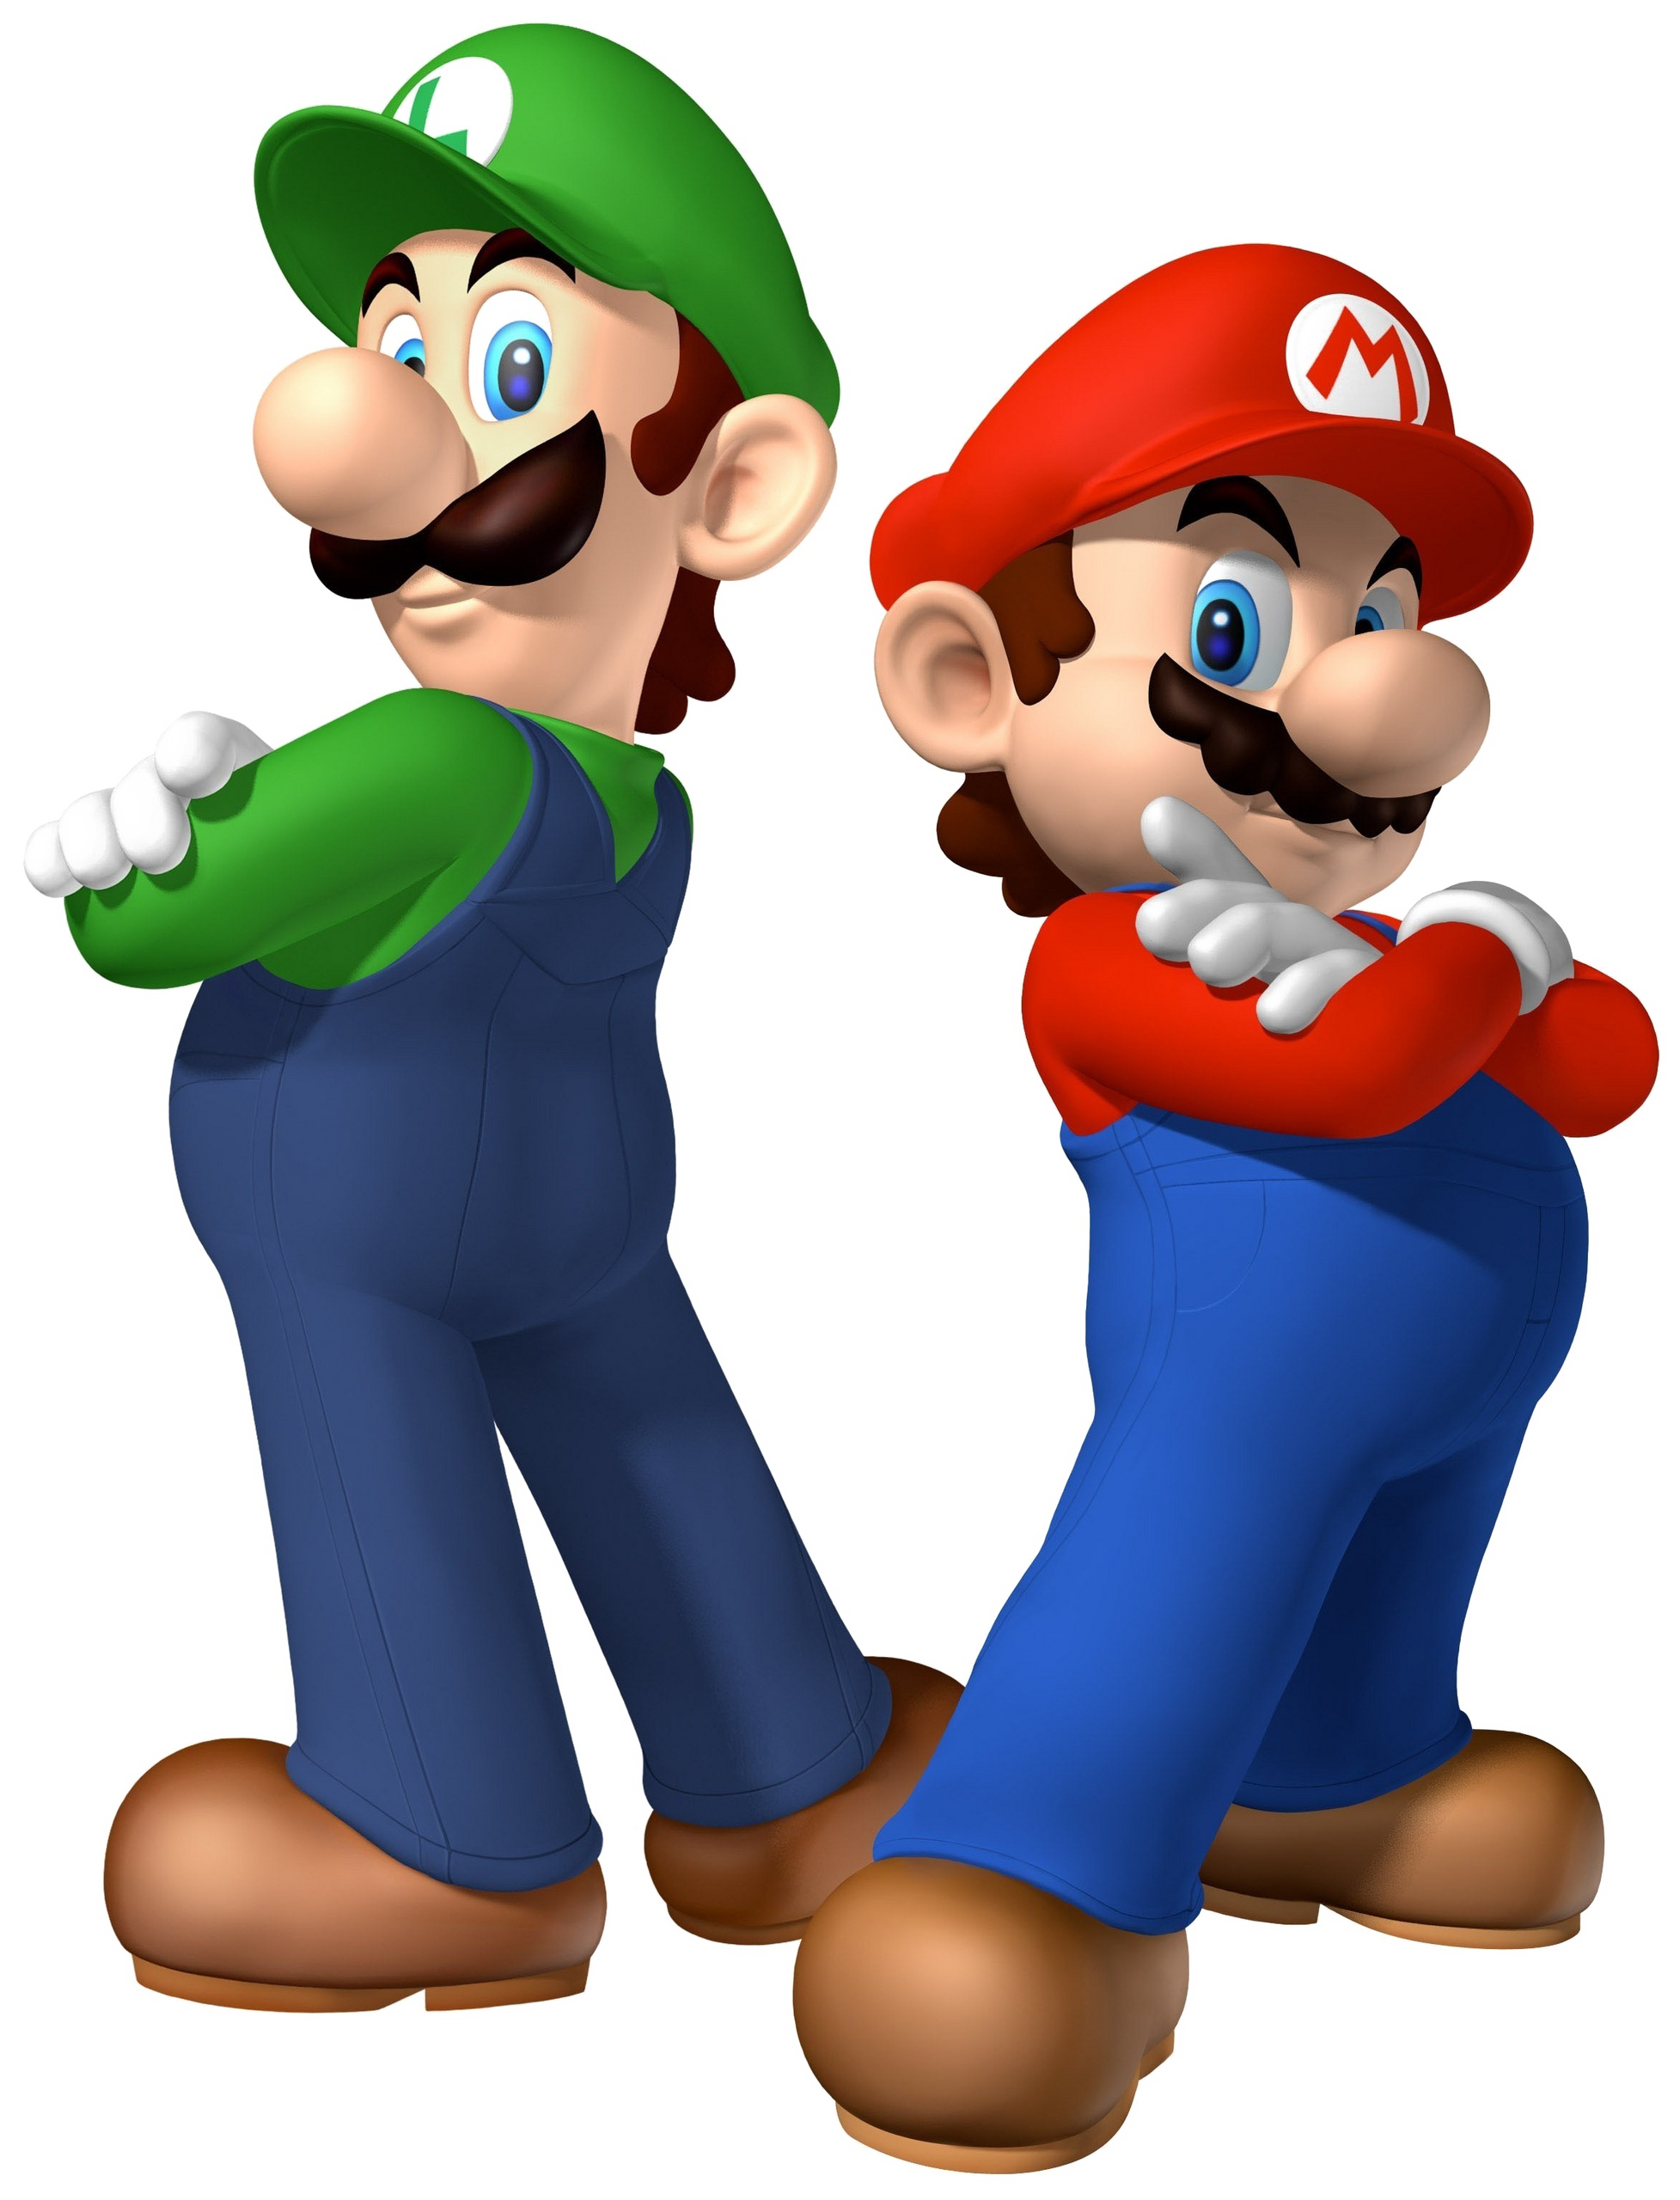 Mario And Luigi PNG Image Transparent